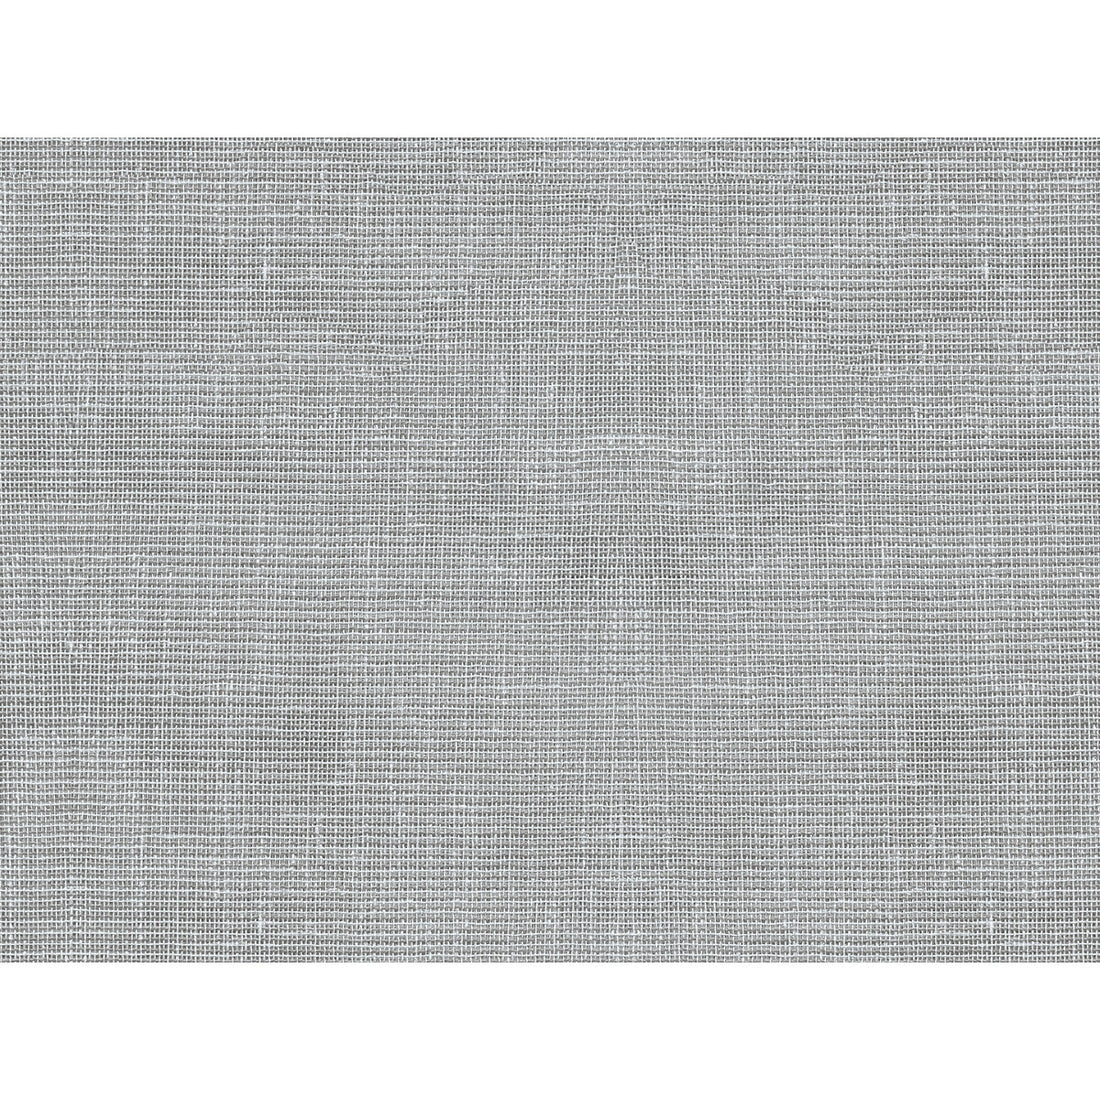 Kravet Basics fabric in 4496-11 color - pattern 4496.11.0 - by Kravet Basics